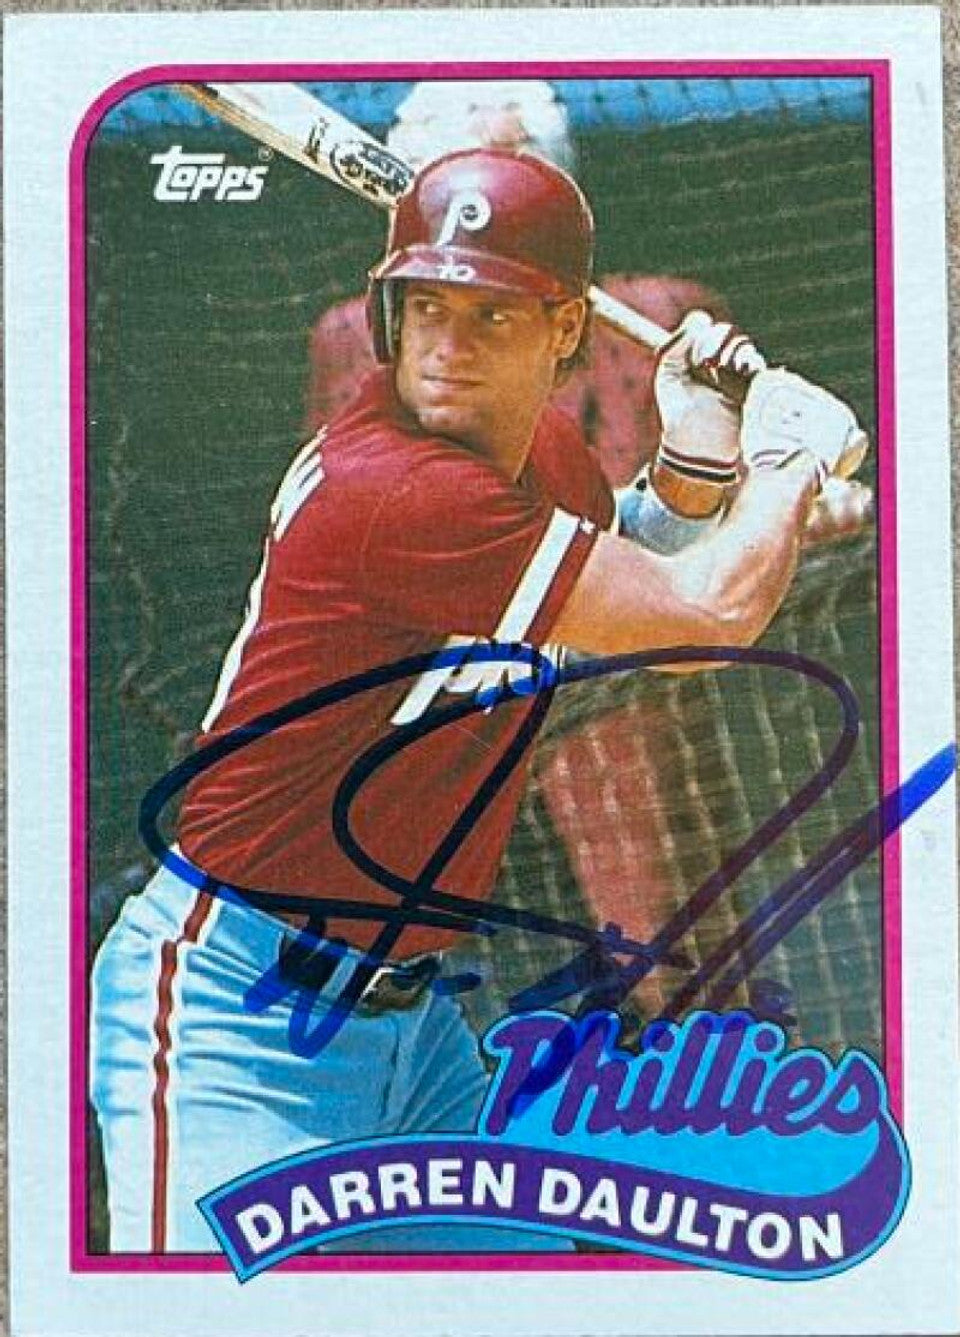 Darren Daulton Signed 1989 Topps Baseball Card - Philadelphia Phillies